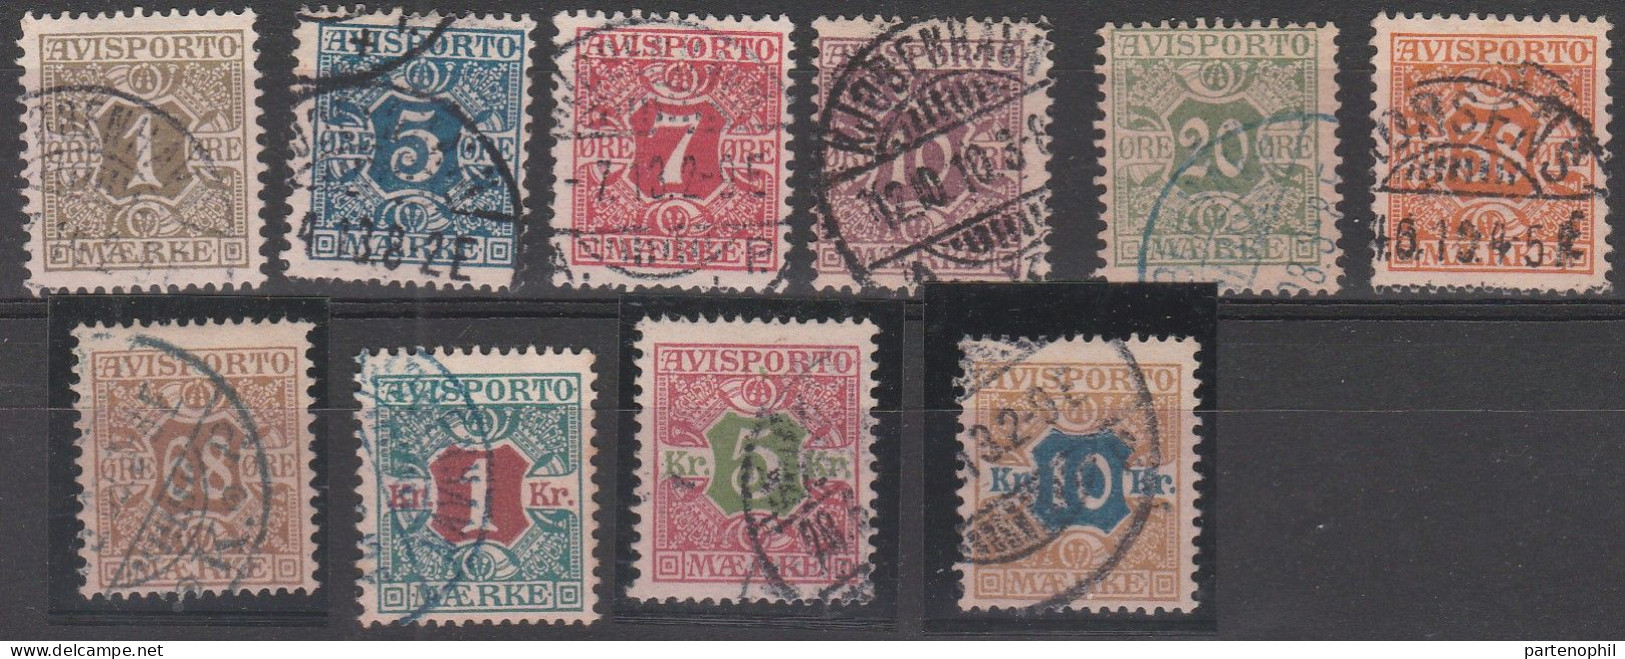 458 - Denmark Danimarca 1907 - Giornali - Cifra Al Centro N. 1/10. Cat. € 180,00. SPL - Usado